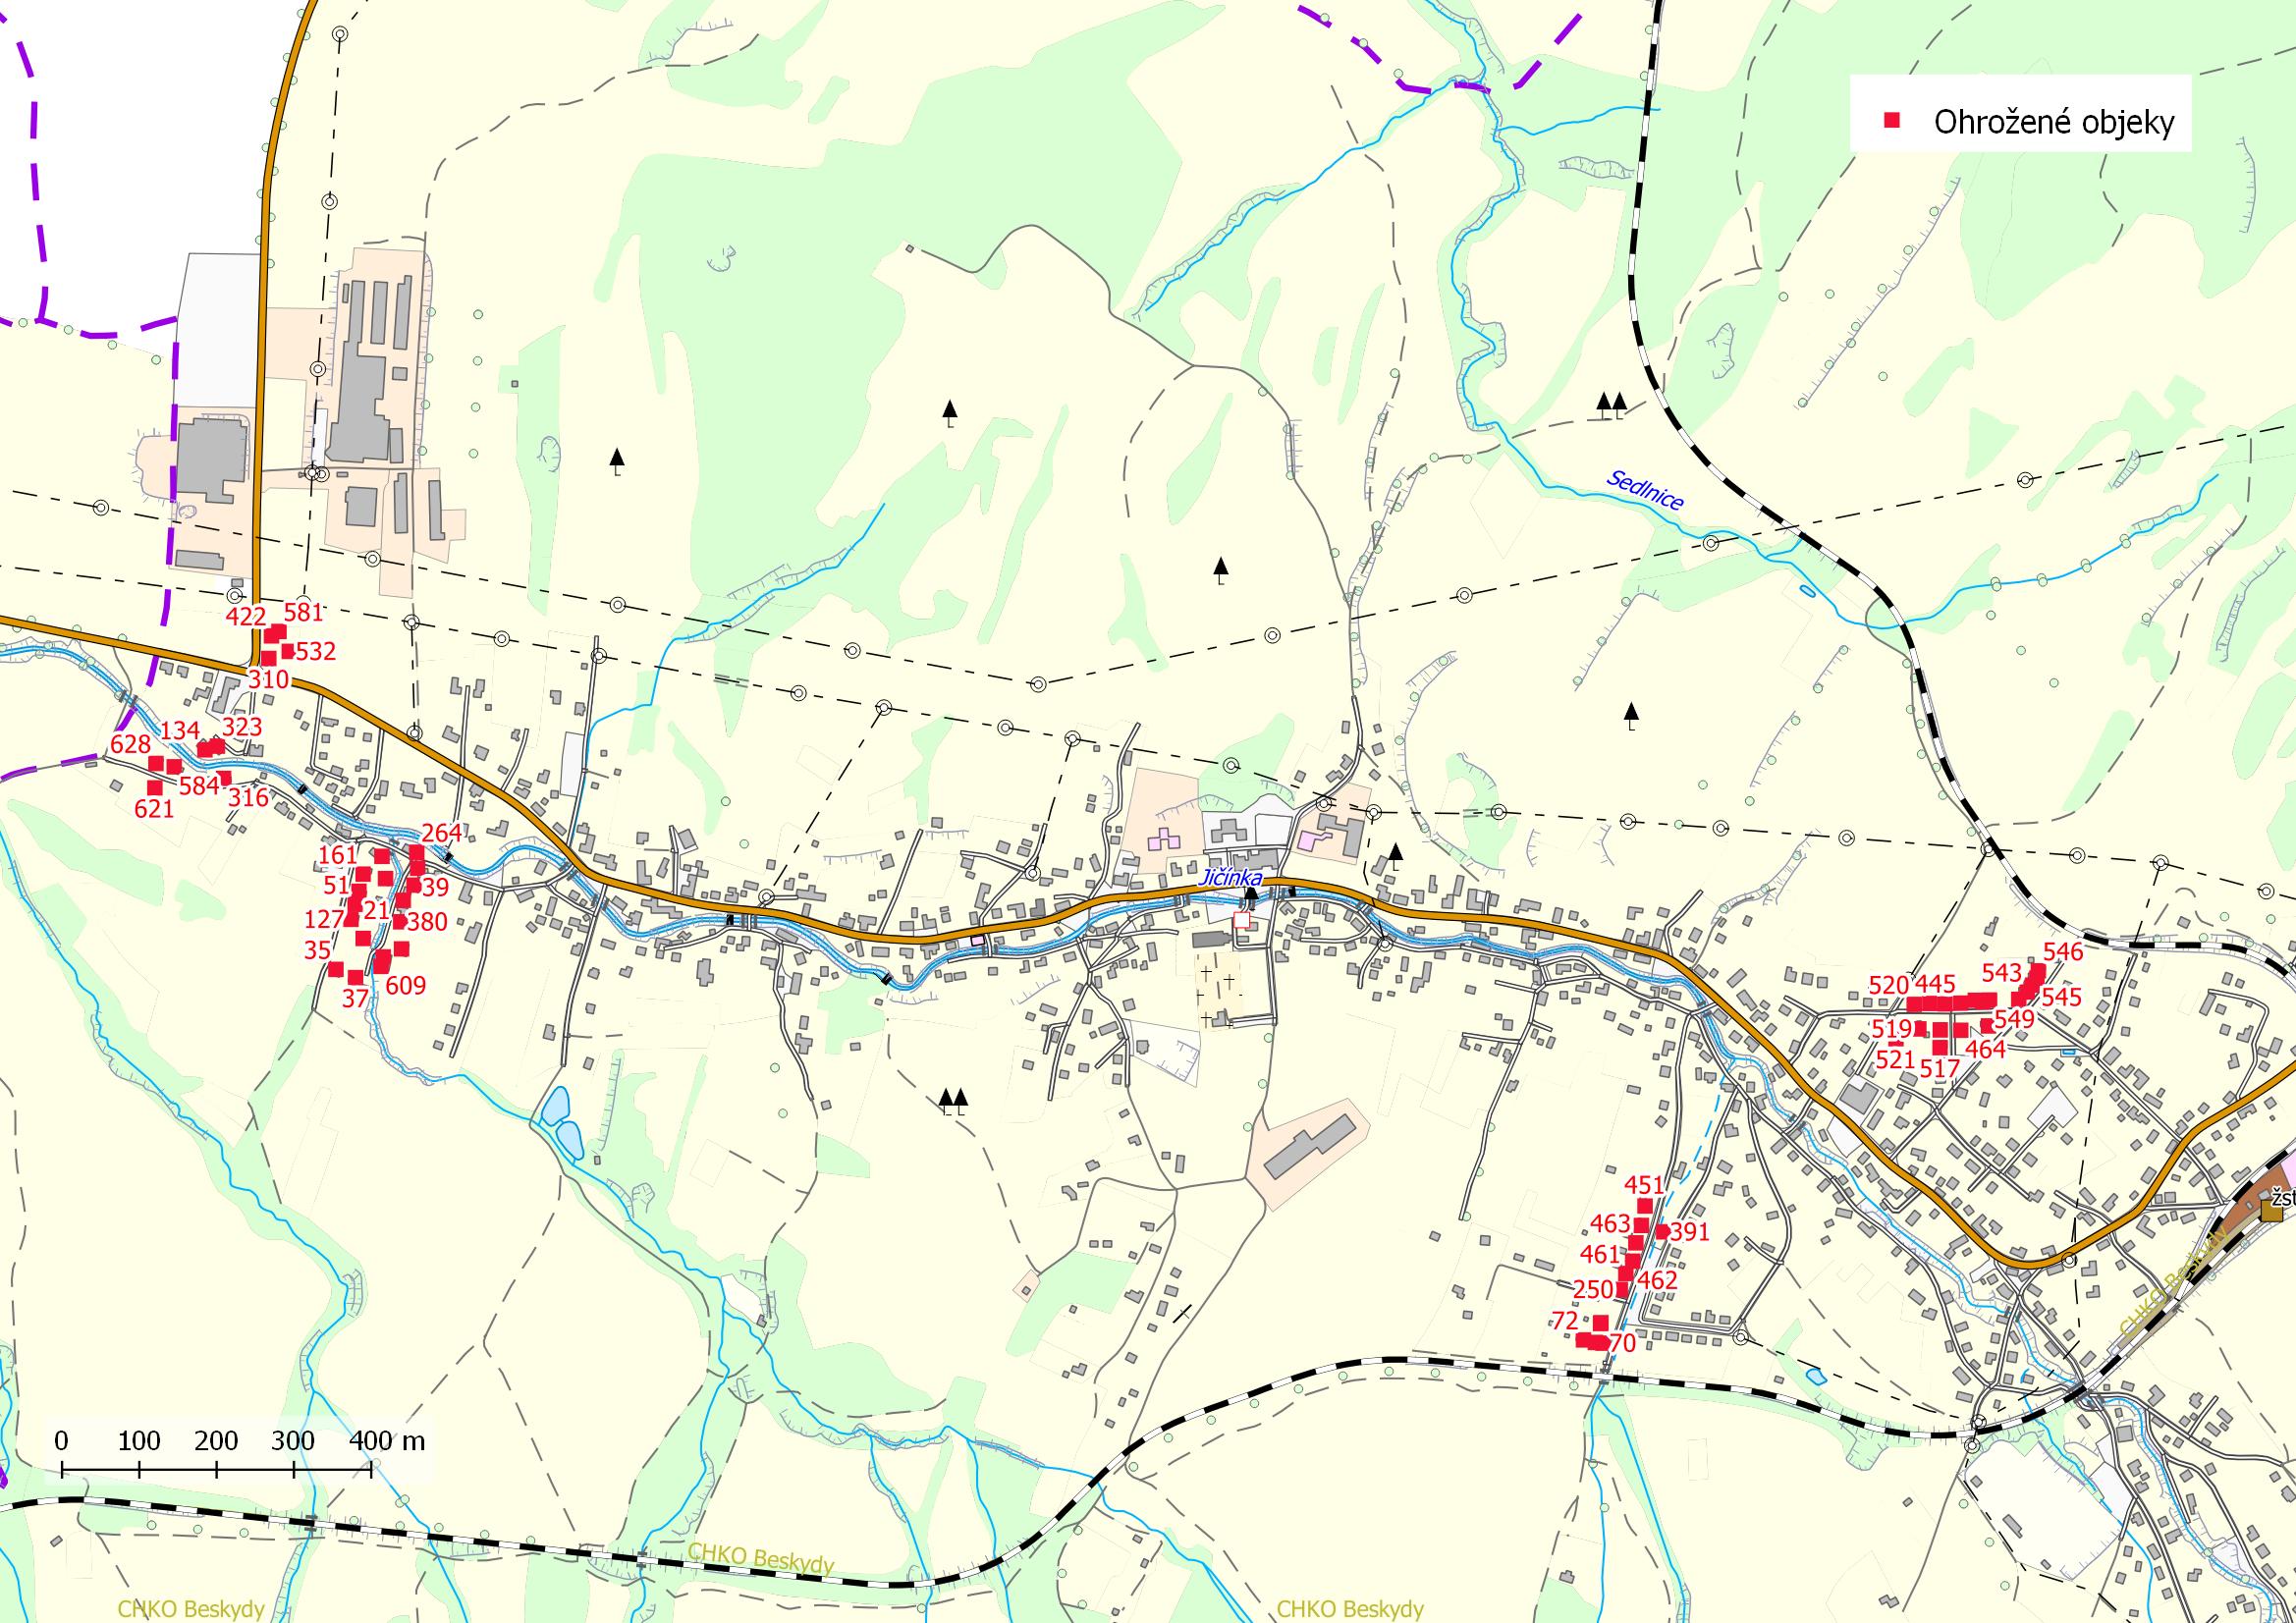 Mapa ohrožených objektů na území obce Veřovice